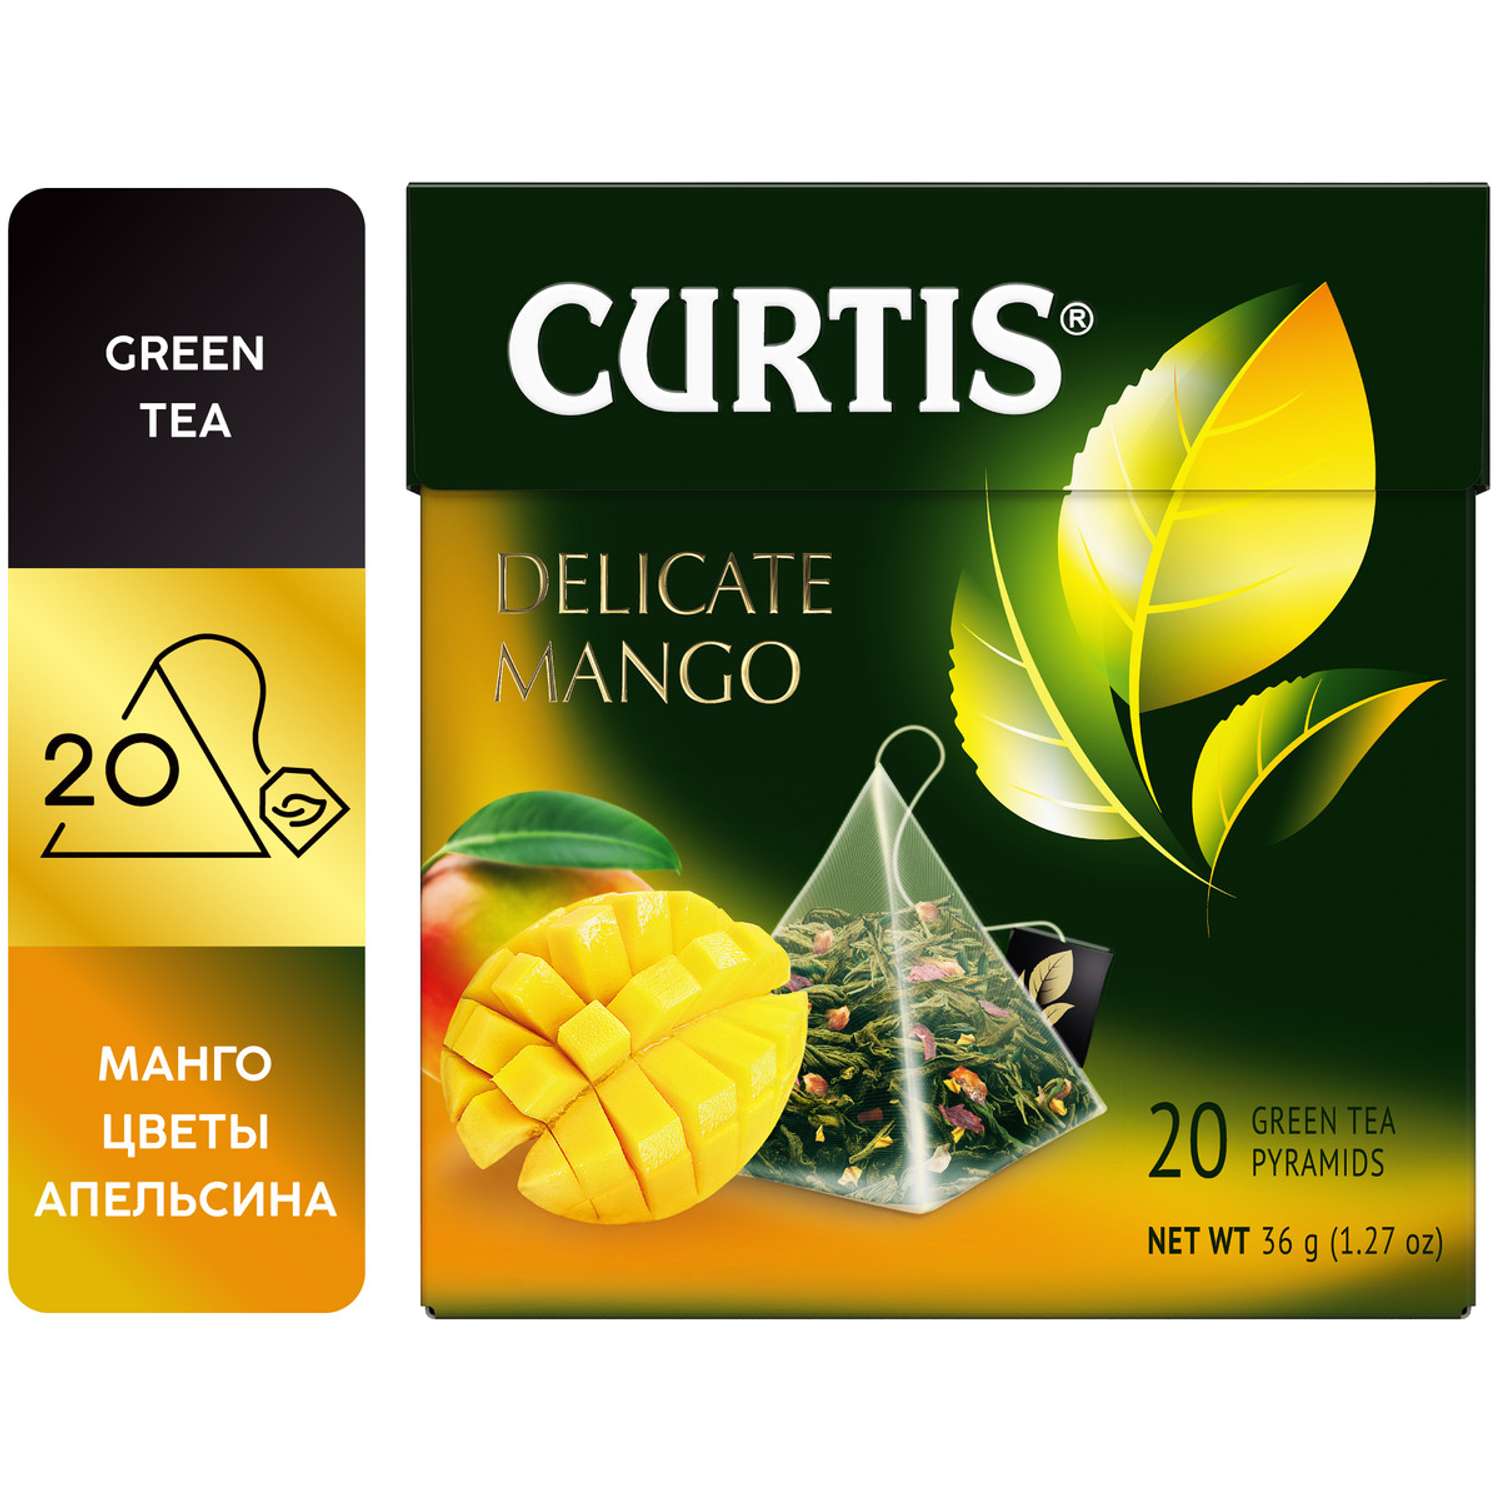 Чай зеленый Curtis Delicate Mango 20 пирамидок с ароматом манго кусочками ананаса и лепестками цветов - фото 2